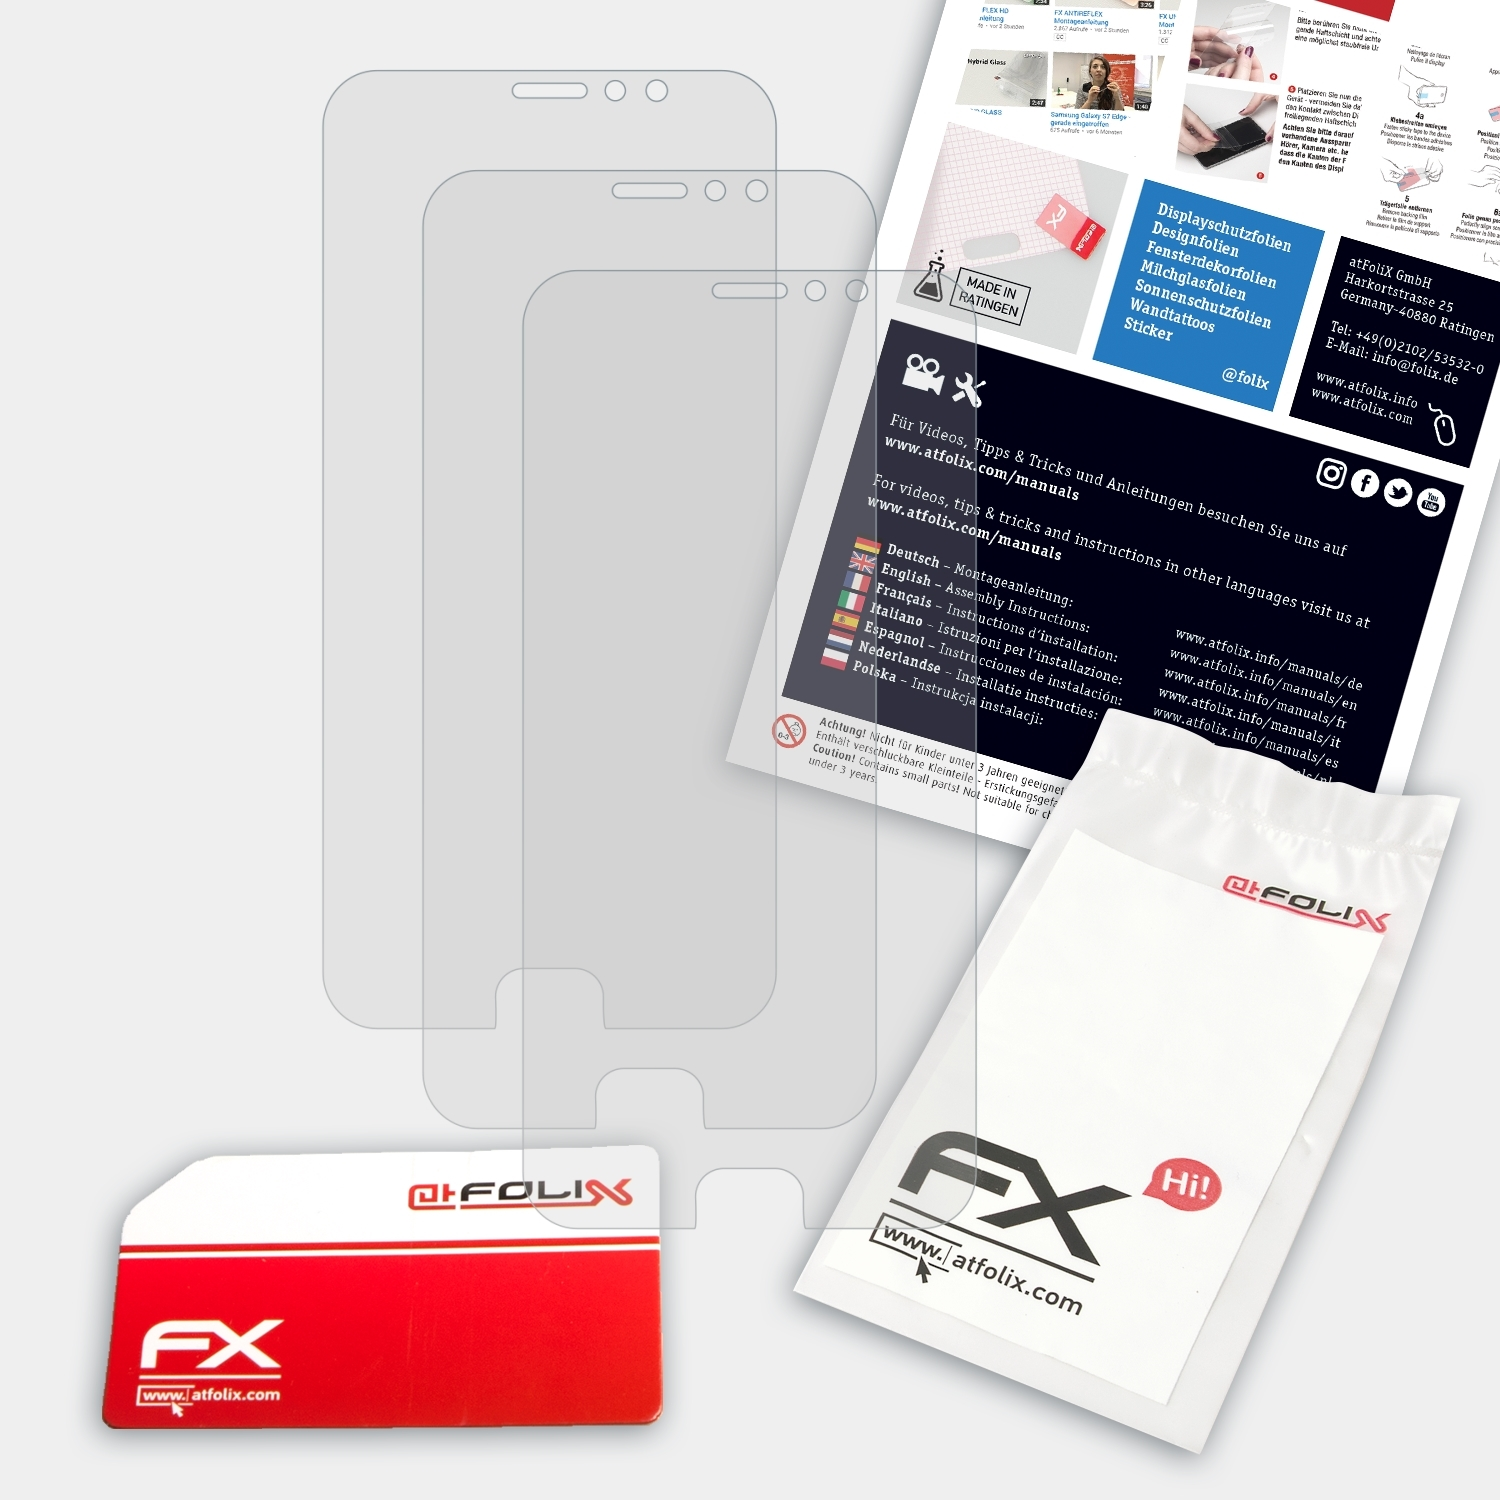 ATFOLIX Plus) Pro 6 Displayschutz(für Meizu FX-Antireflex 3x